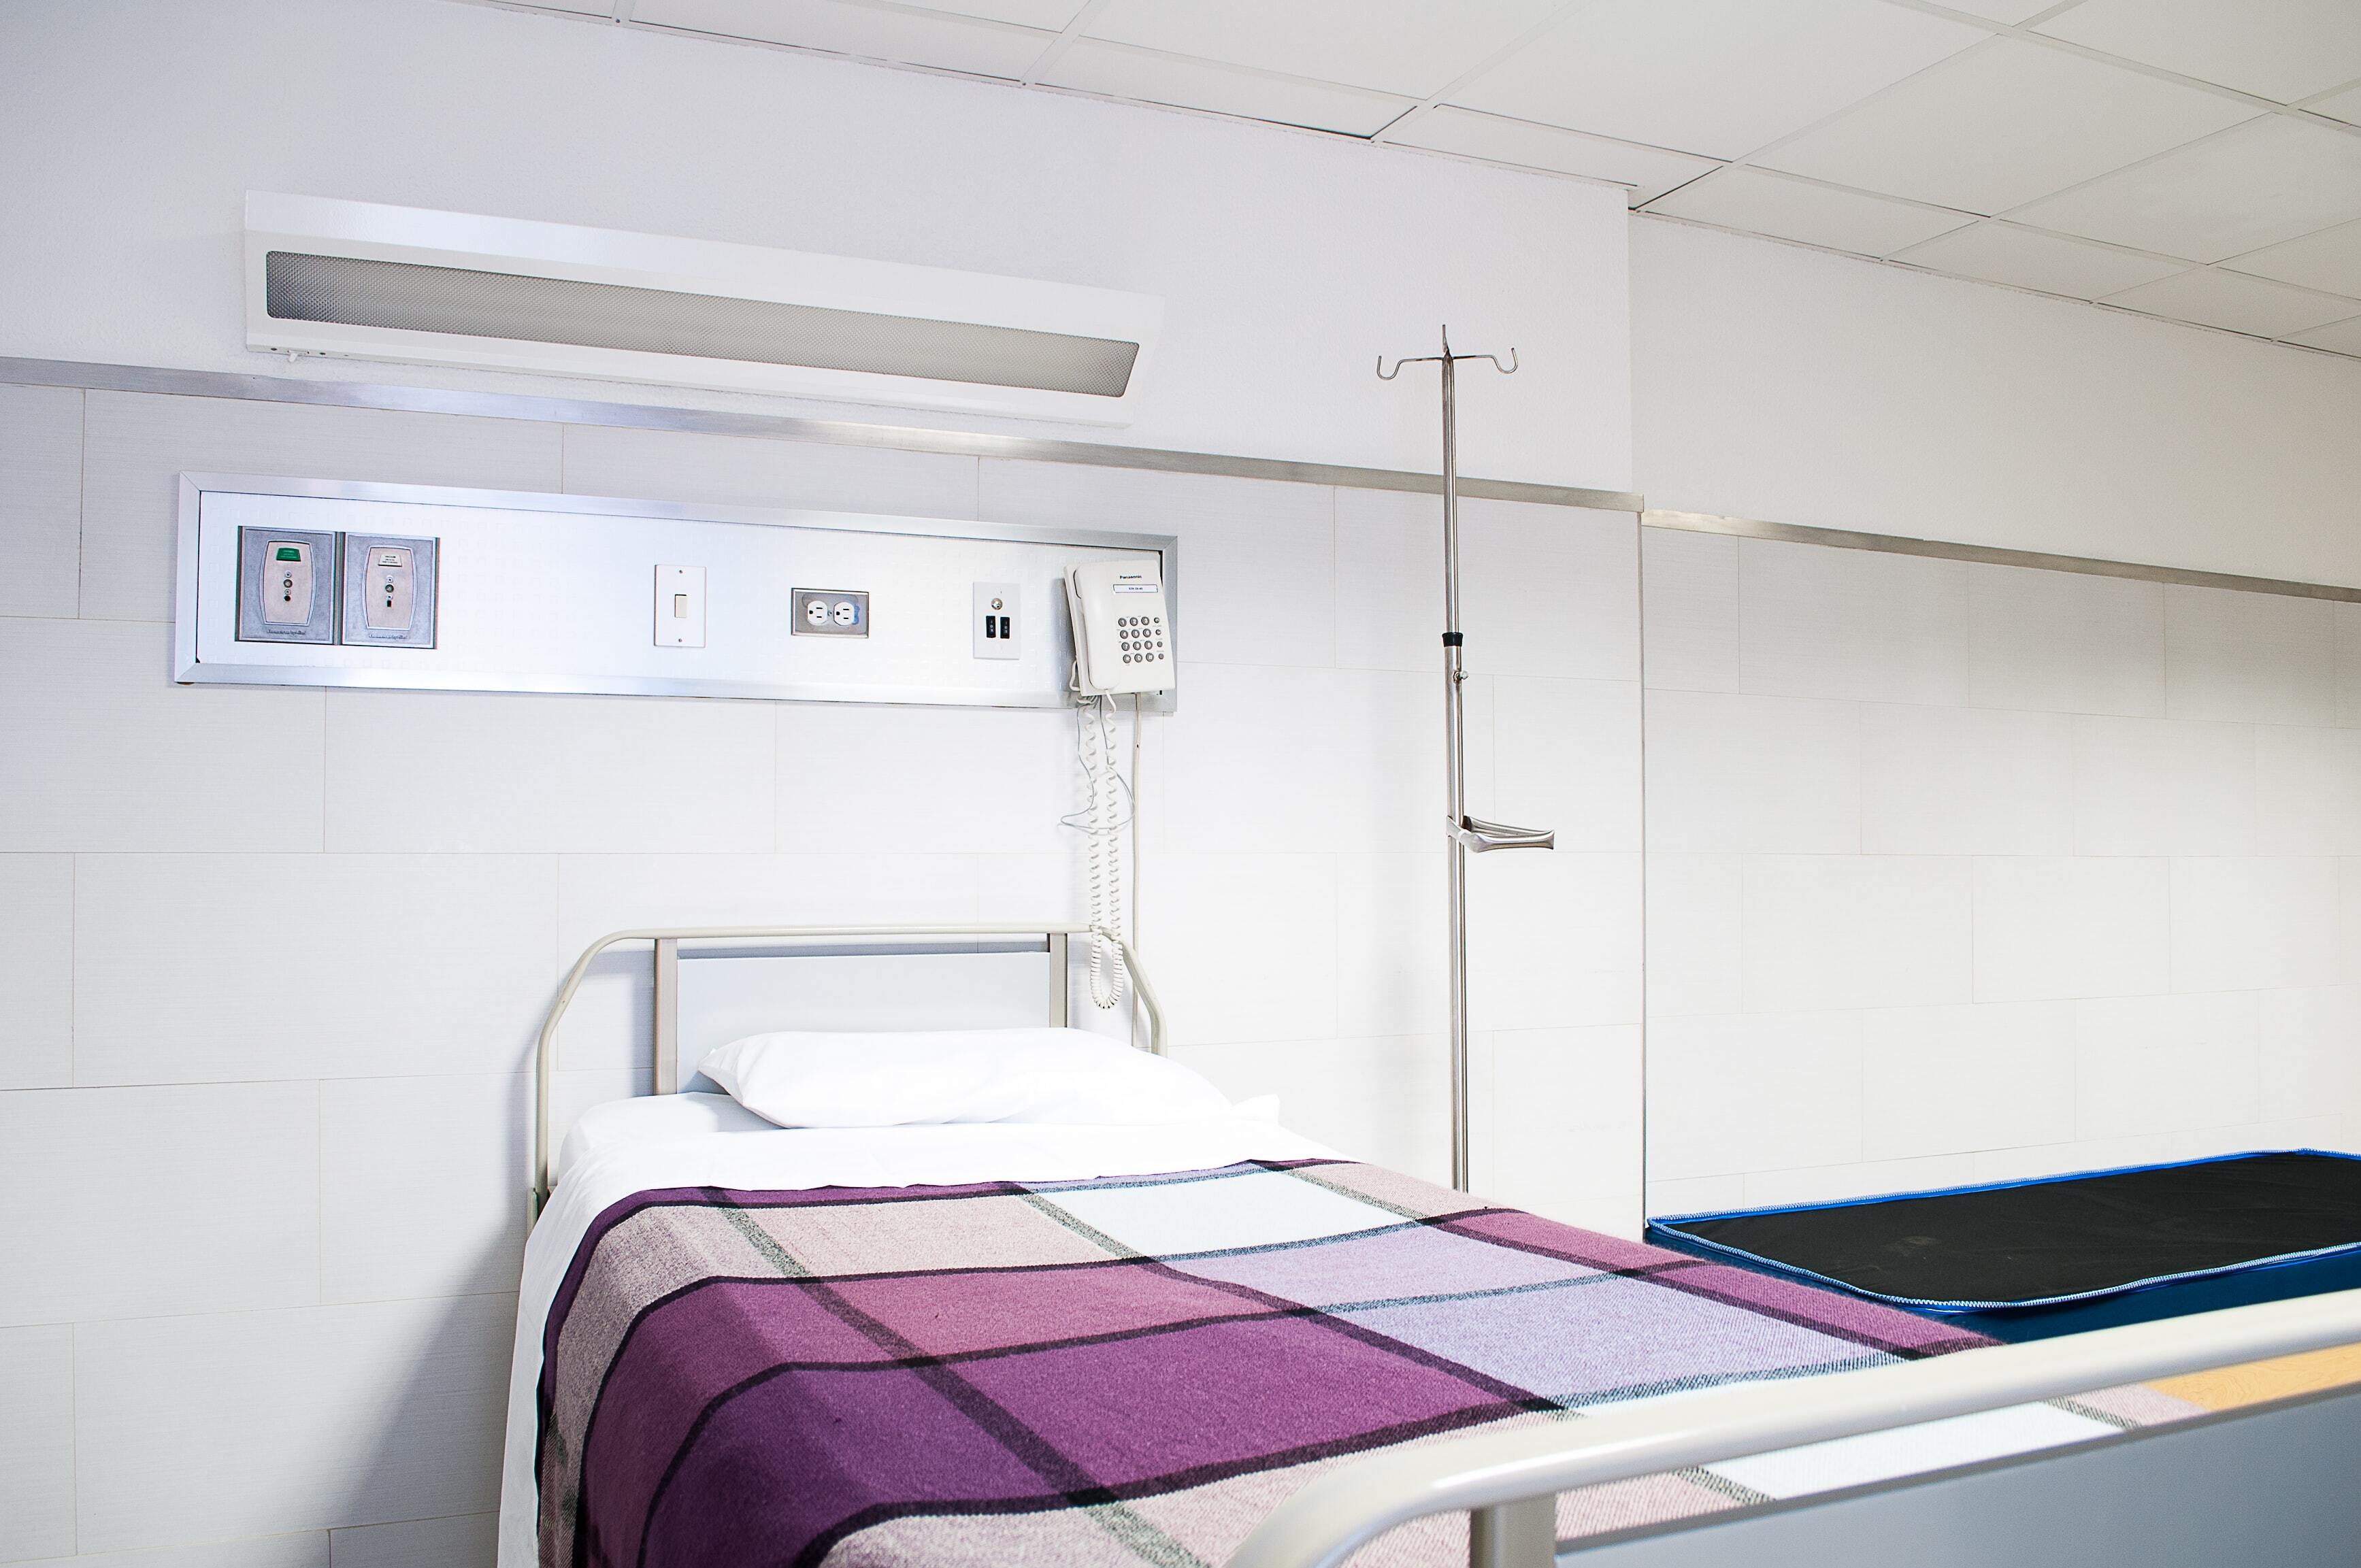 Asuransi kesehatan menjamin biaya kamar pasien saat rawat inap